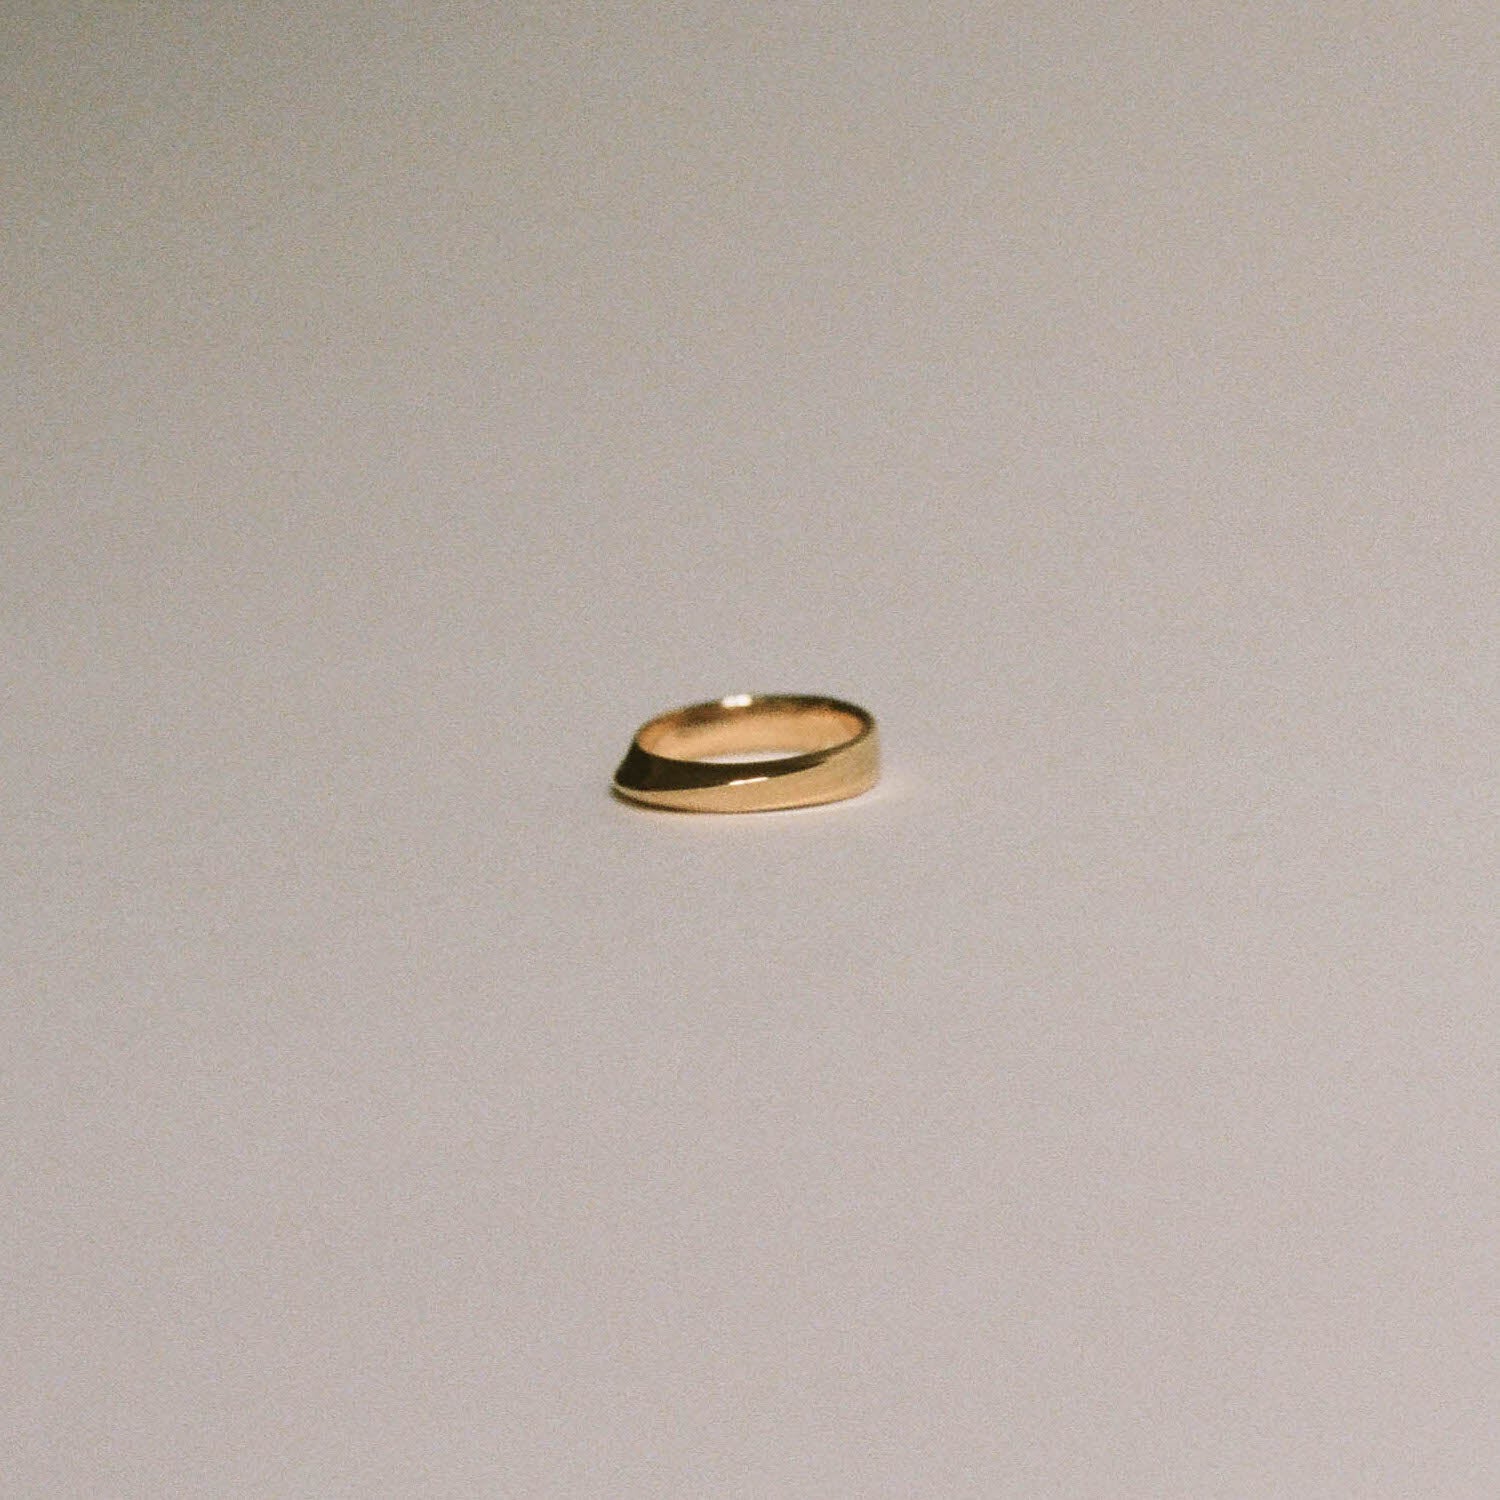 Mobius Strip Ring Gold